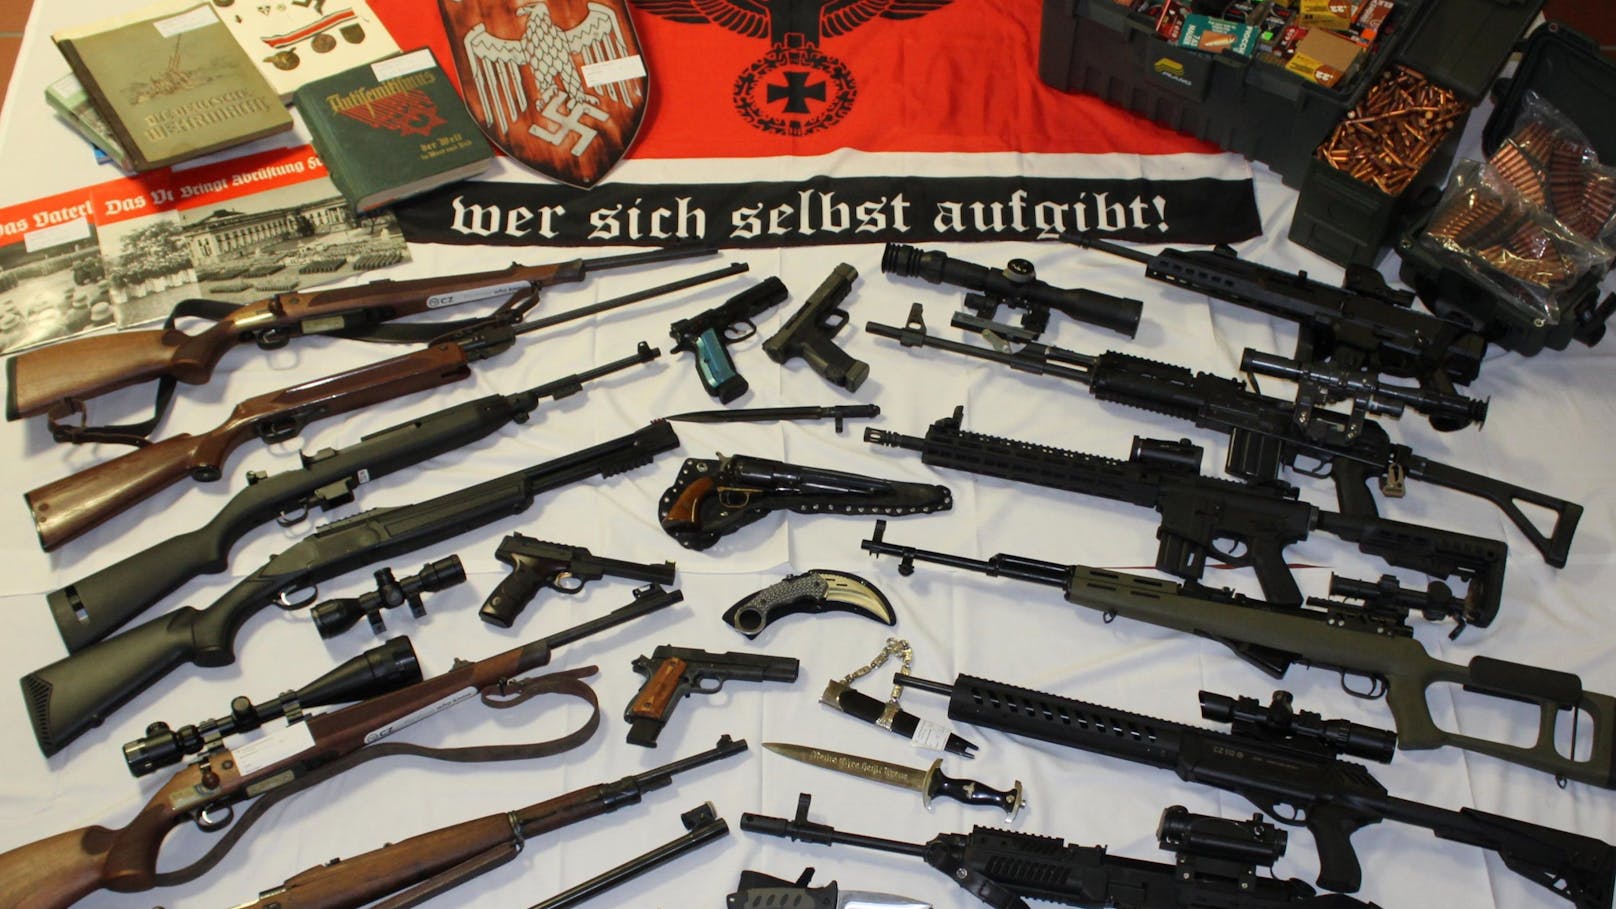 Waffen, NS-Devotionalien – Groß-Razzia in Rechter Szene